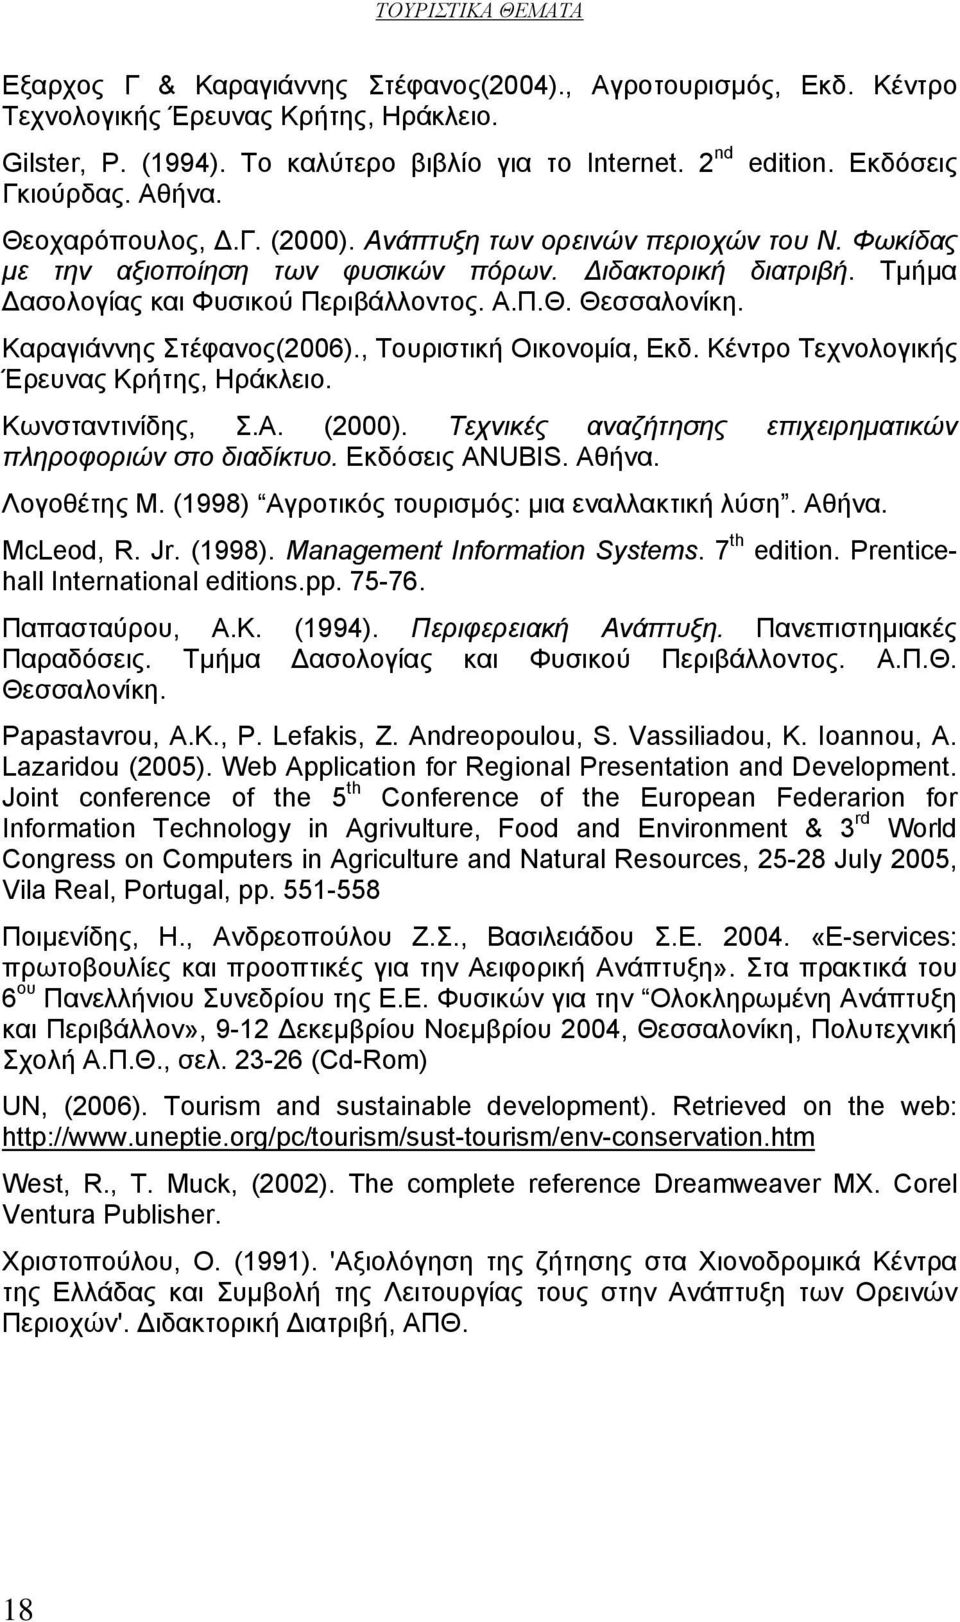 Καραγιάννης Στέφανος(2006)., Τουριστική Οικονομία, Εκδ. Κέντρο Τεχνολογικής Έρευνας Κρήτης, Ηράκλειο. Κωνσταντινίδης, Σ.Α. (2000). Τεχνικές αναζήτησης επιχειρηματικών πληροφοριών στο διαδίκτυο.